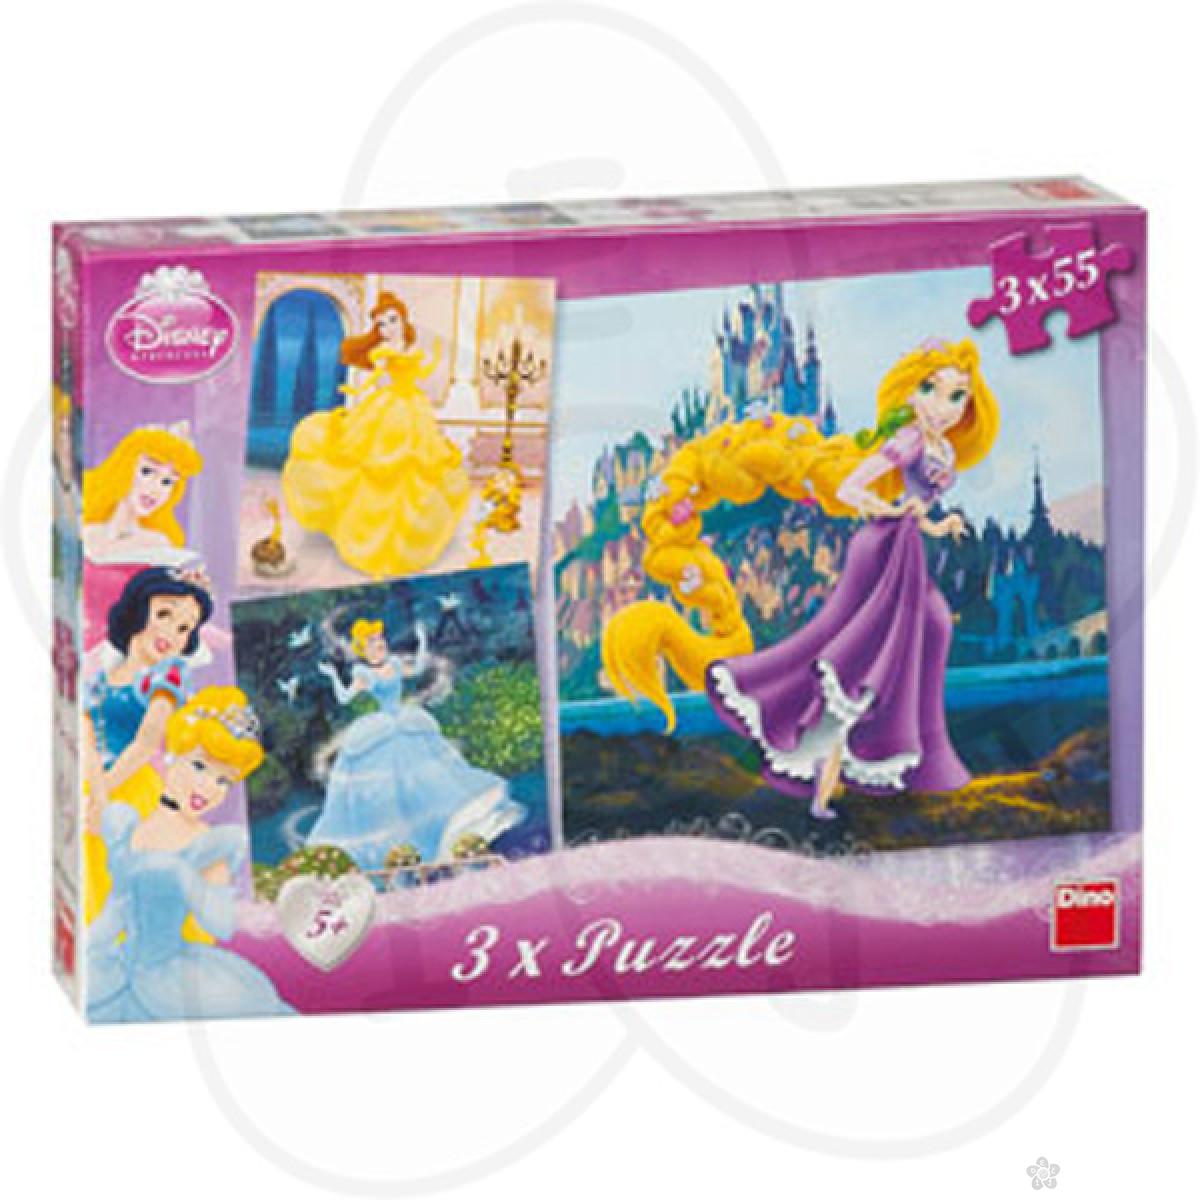 Puzzle za decu Disney Princess 3 x 55 delova, D335042 